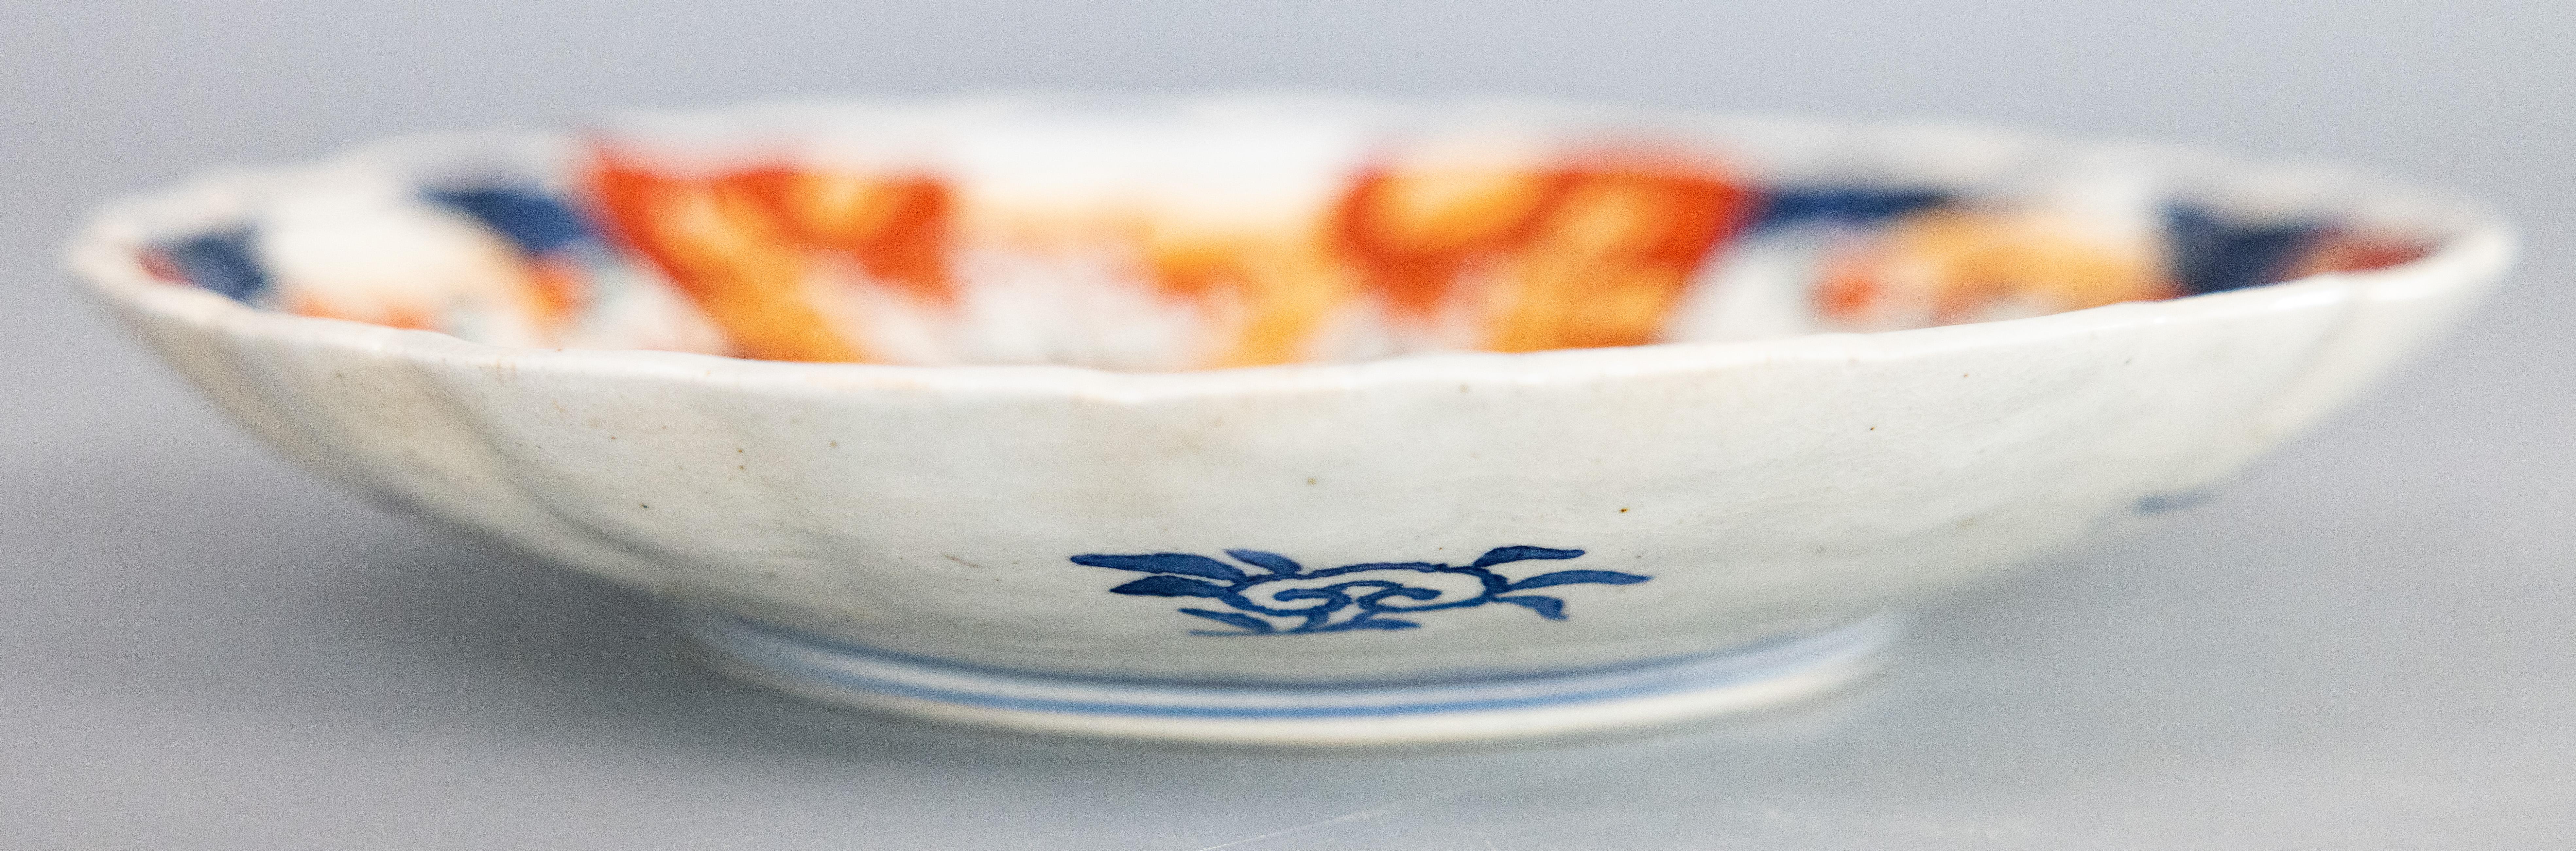 Merveilleuse assiette Imari antique du 19e siècle à bord festonné. Avec des oranges, des bleus et des sarcelles vibrants.